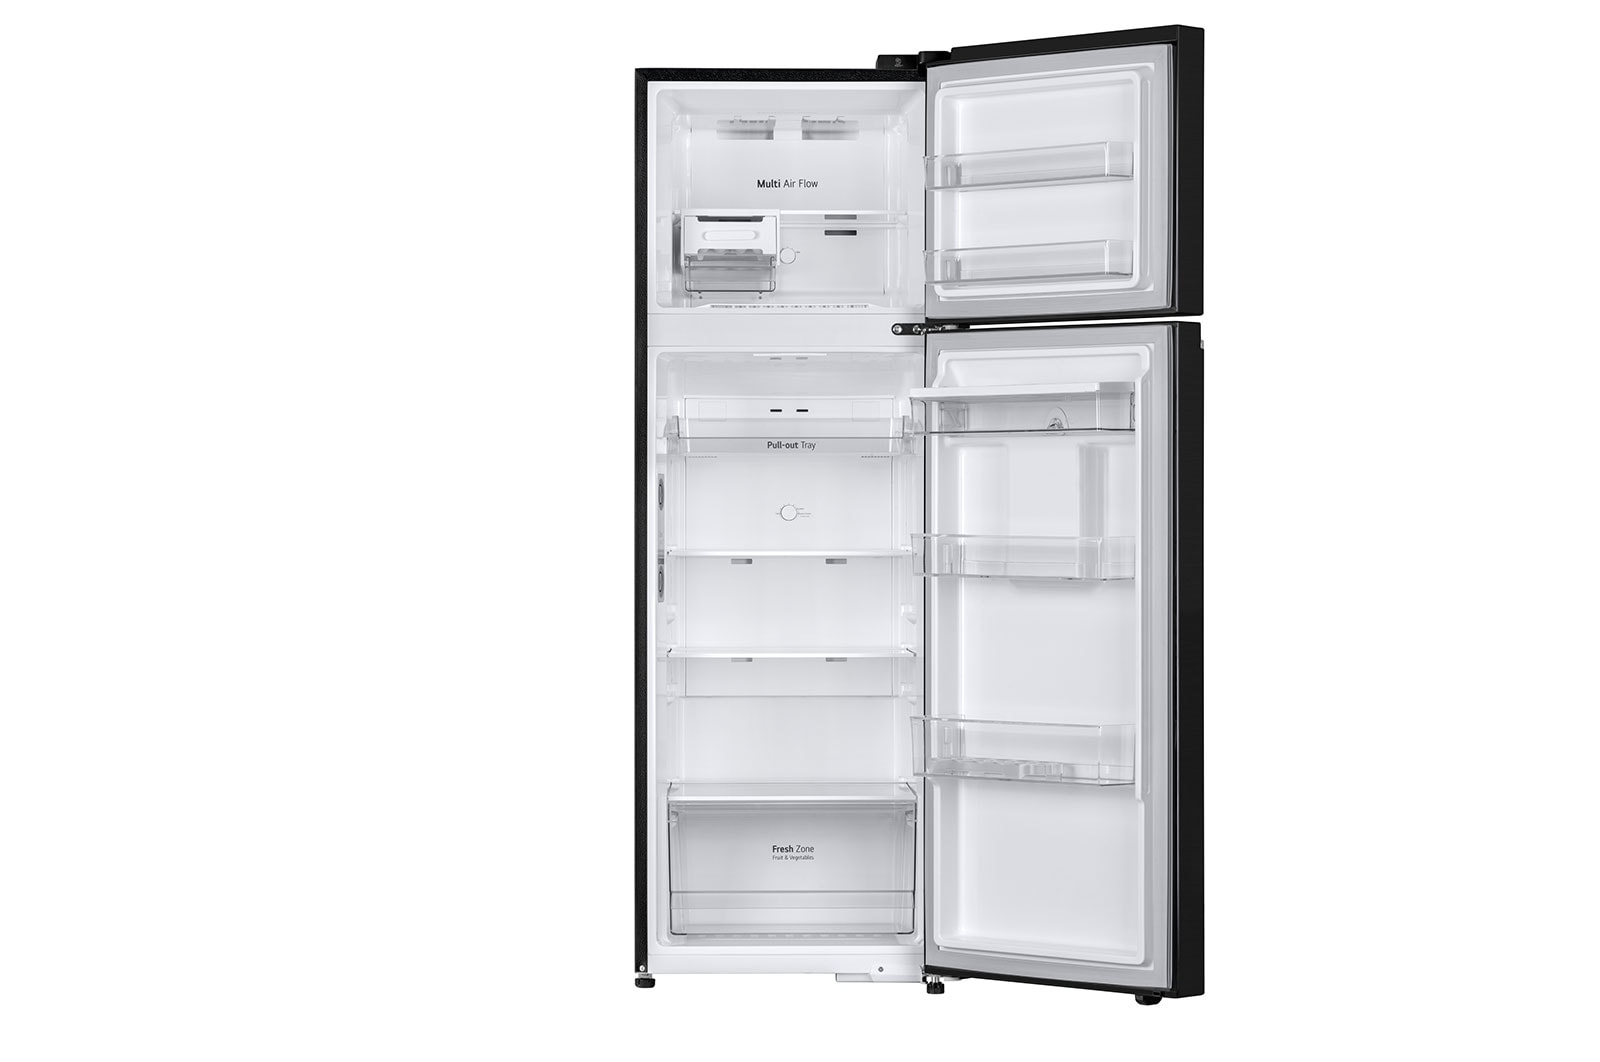 LG Tủ lạnh ngăn đá trên, lấy nước ngoài LG Smart Inverter 264L (Đen), hình ảnh tủ mở phía trước bên trong có thực phẩm, GV-D262BL